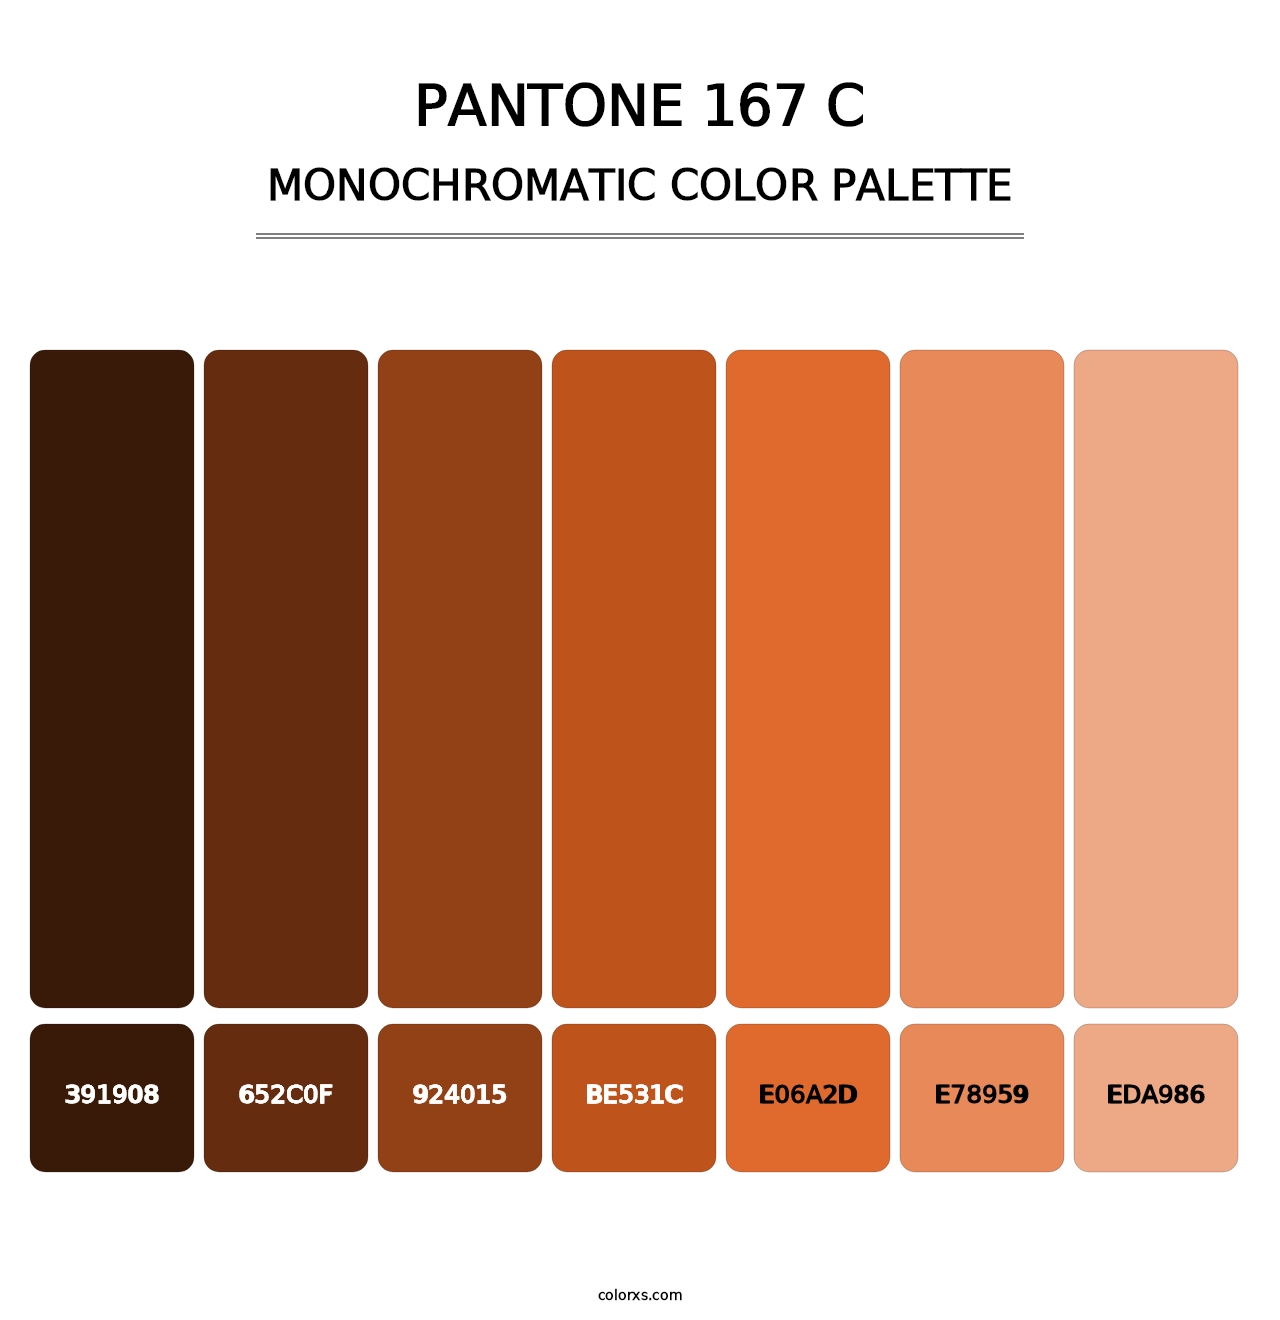 PANTONE 167 C - Monochromatic Color Palette